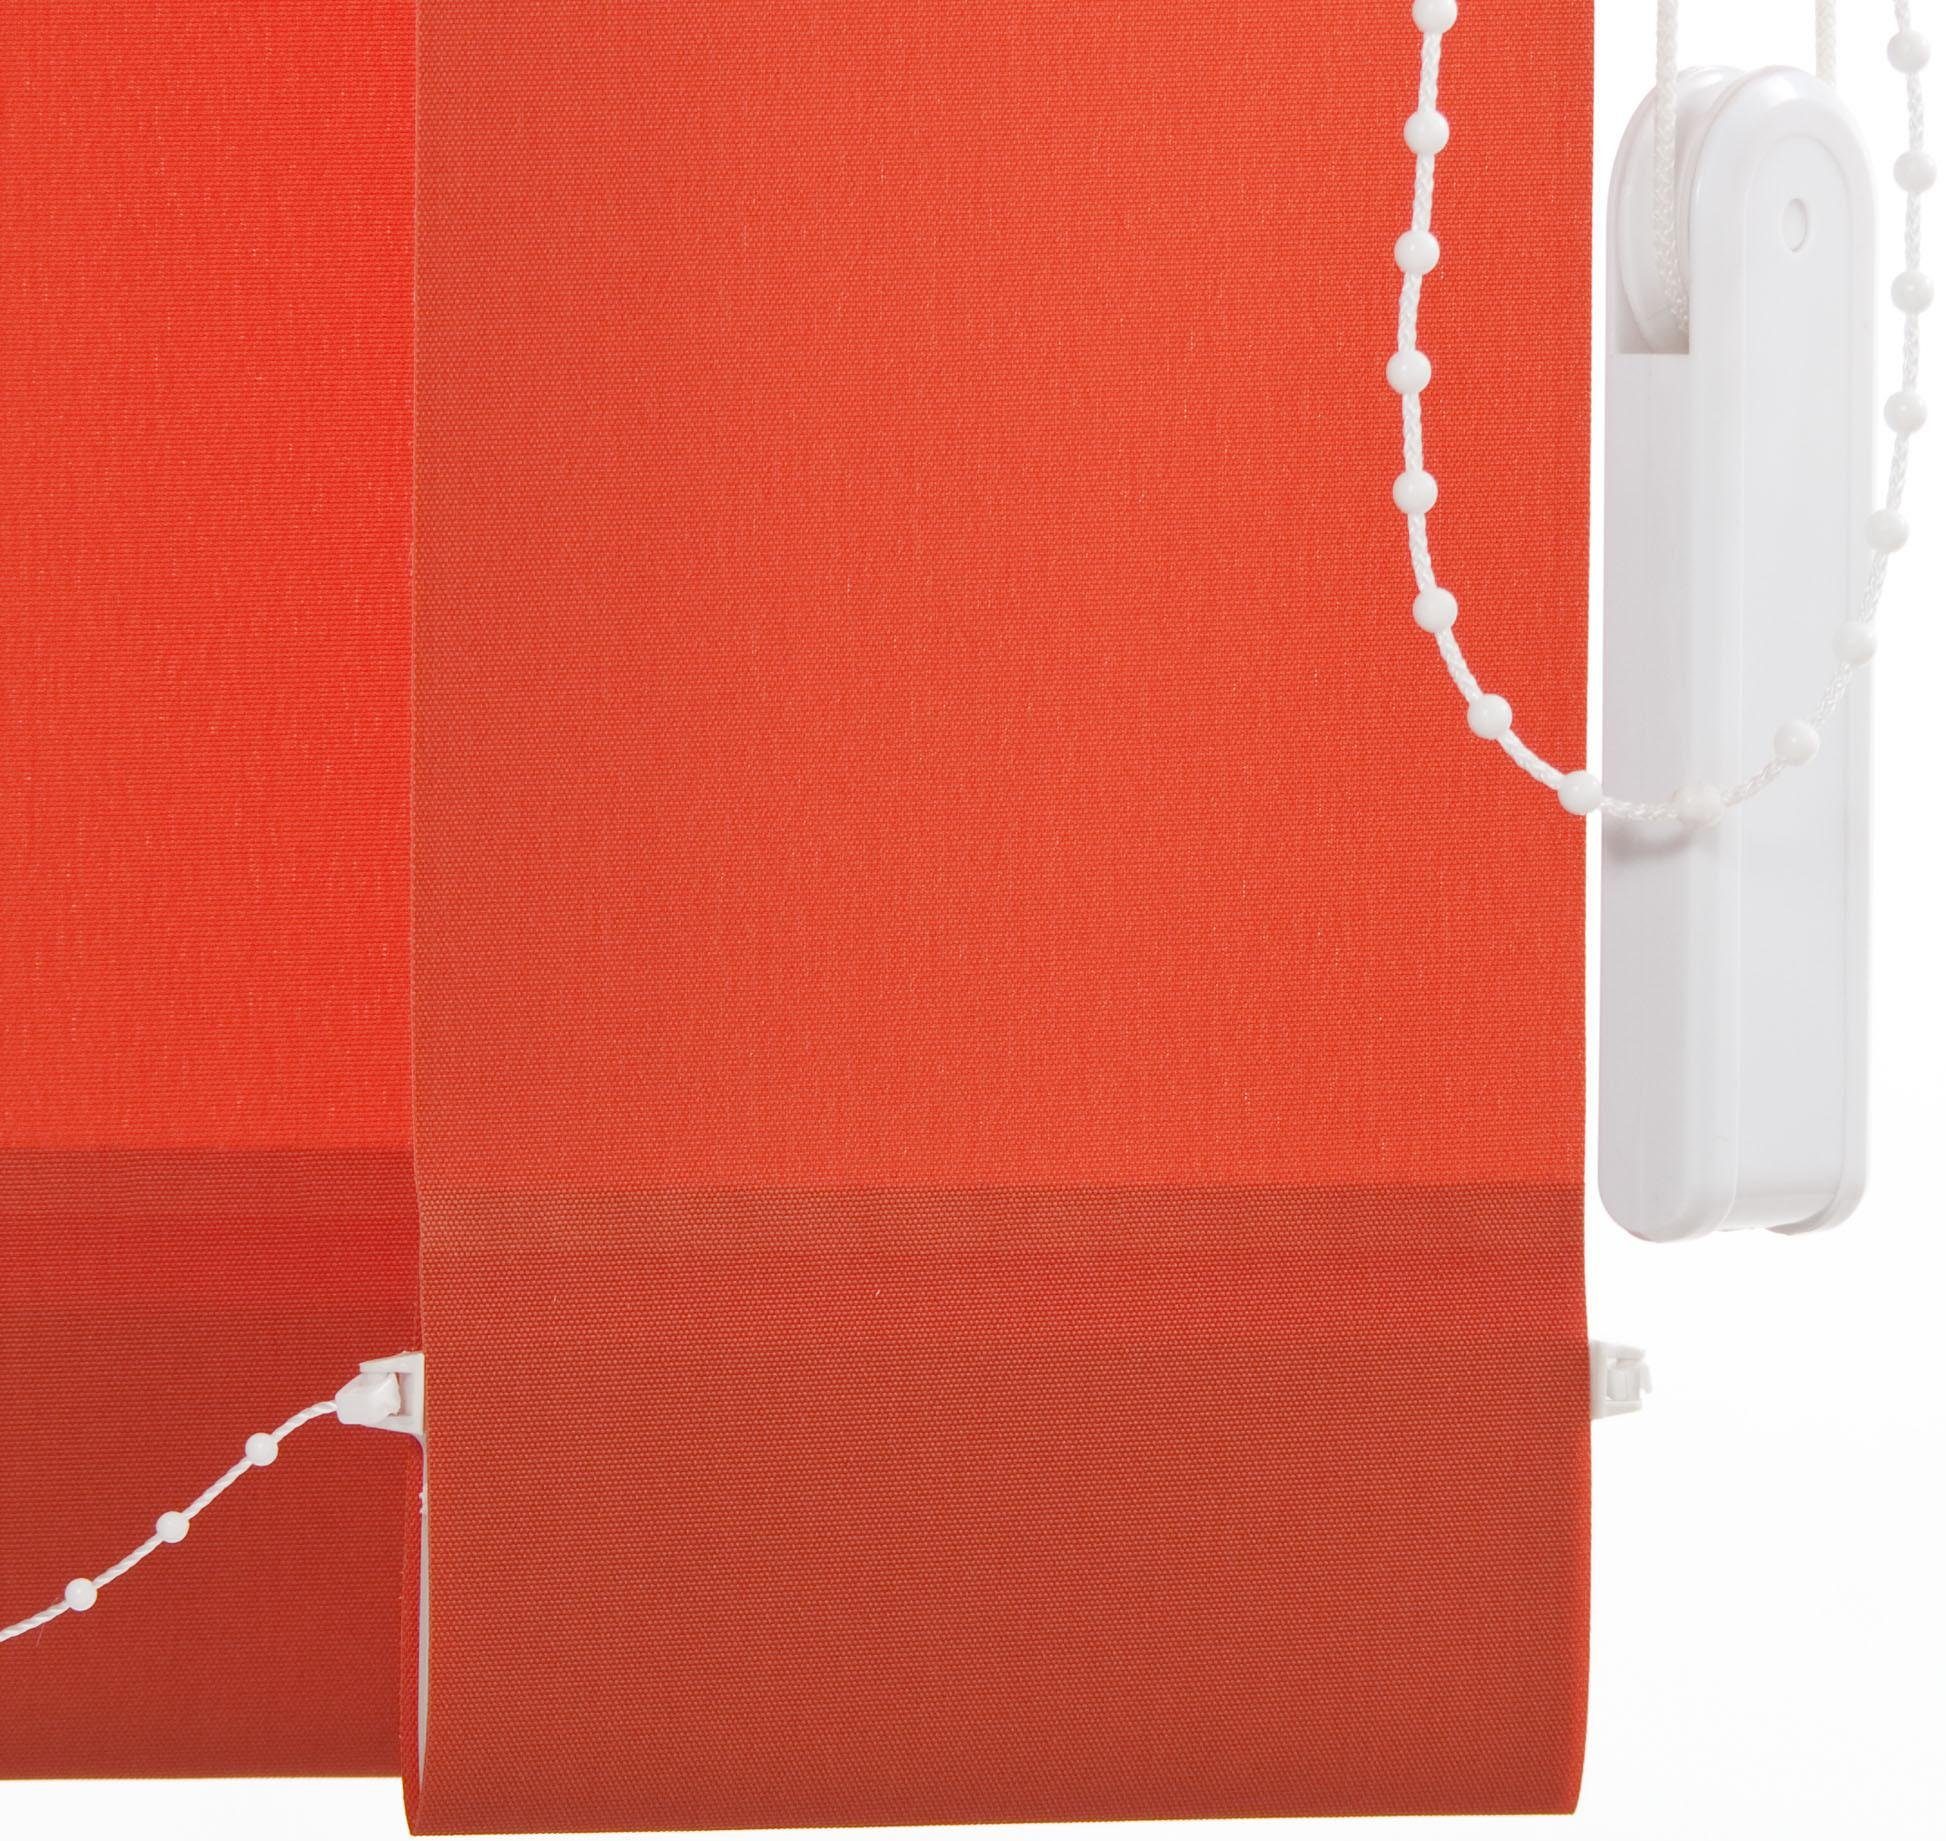 Bohren Vertikalanlage Lamellenvorhang rot mit mm, Liedeco, 127